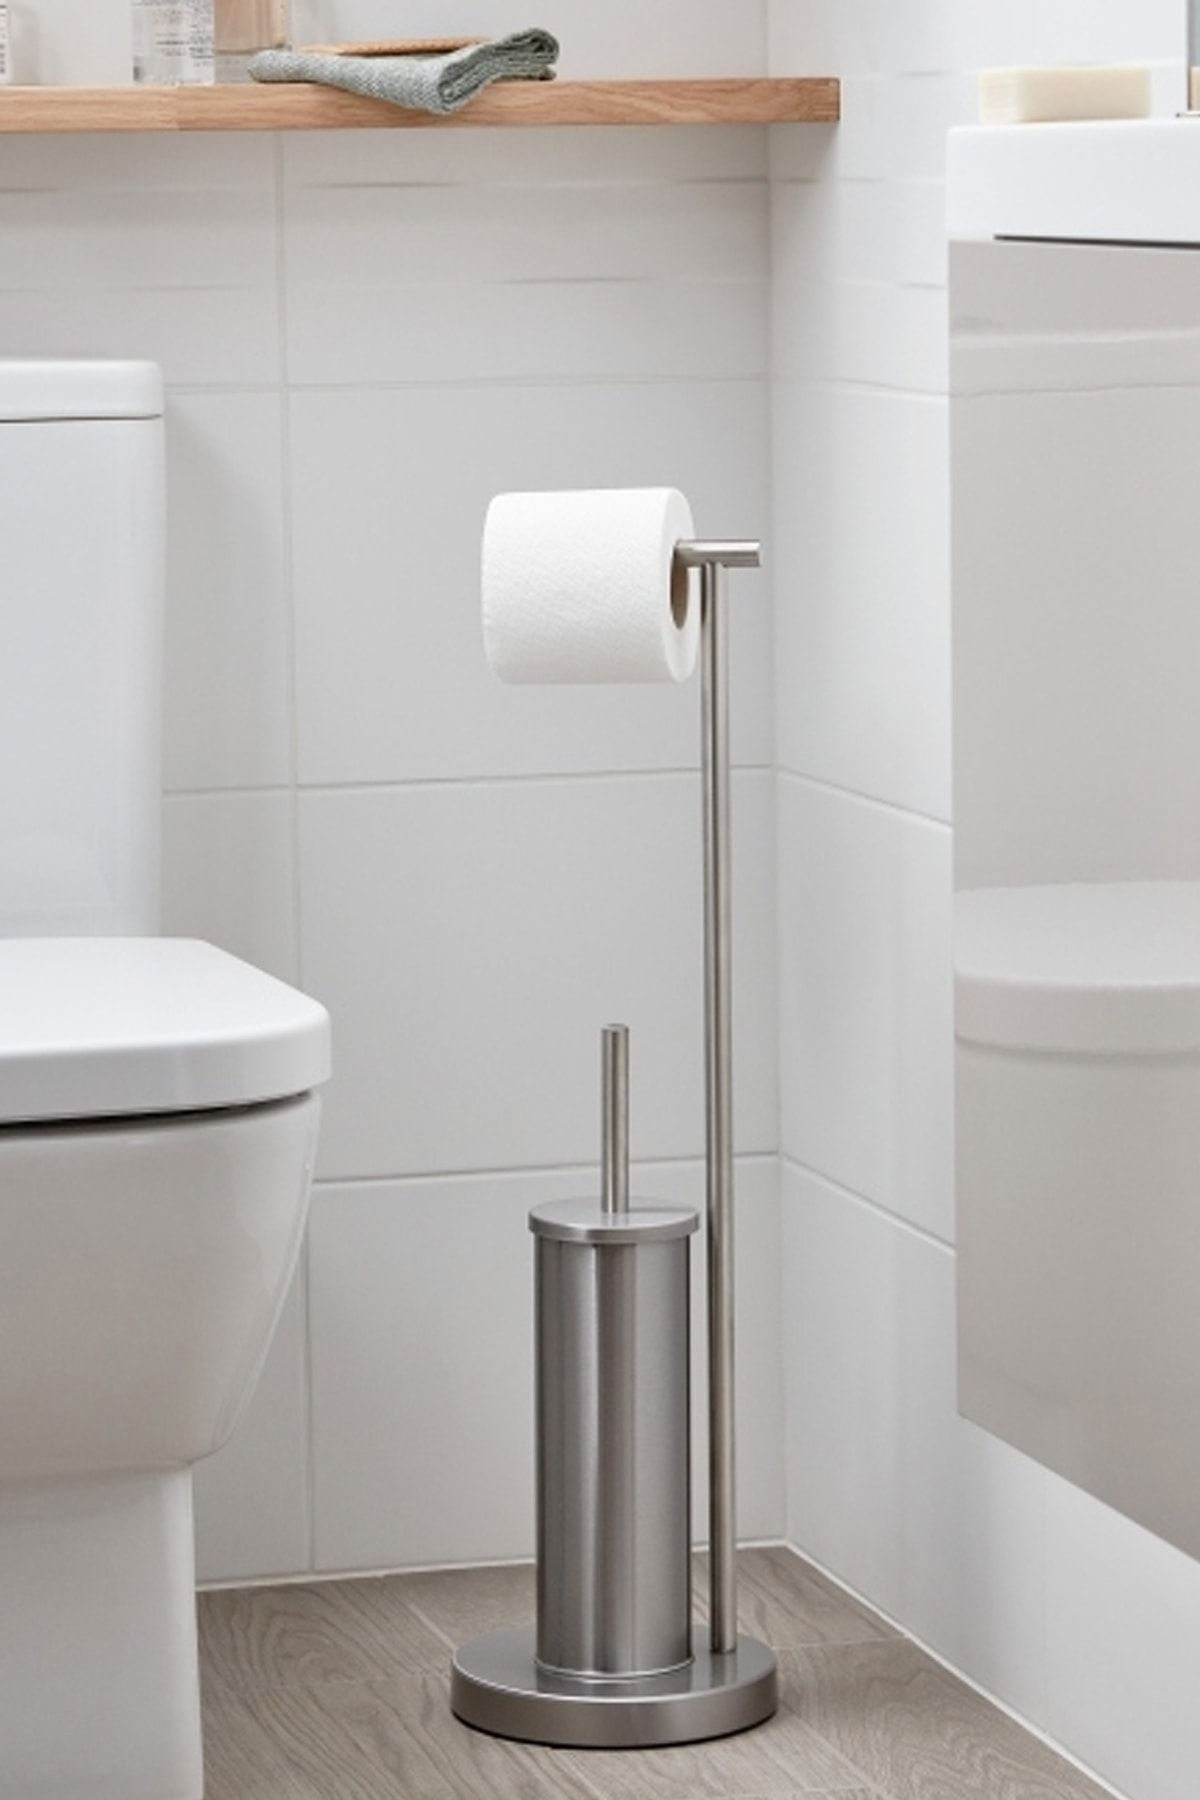 Binbirreyon Krom Ayaklı Tuvalet Kağıtlığı Ve Tuvalet Fırçası Standlı 69cm Lb025